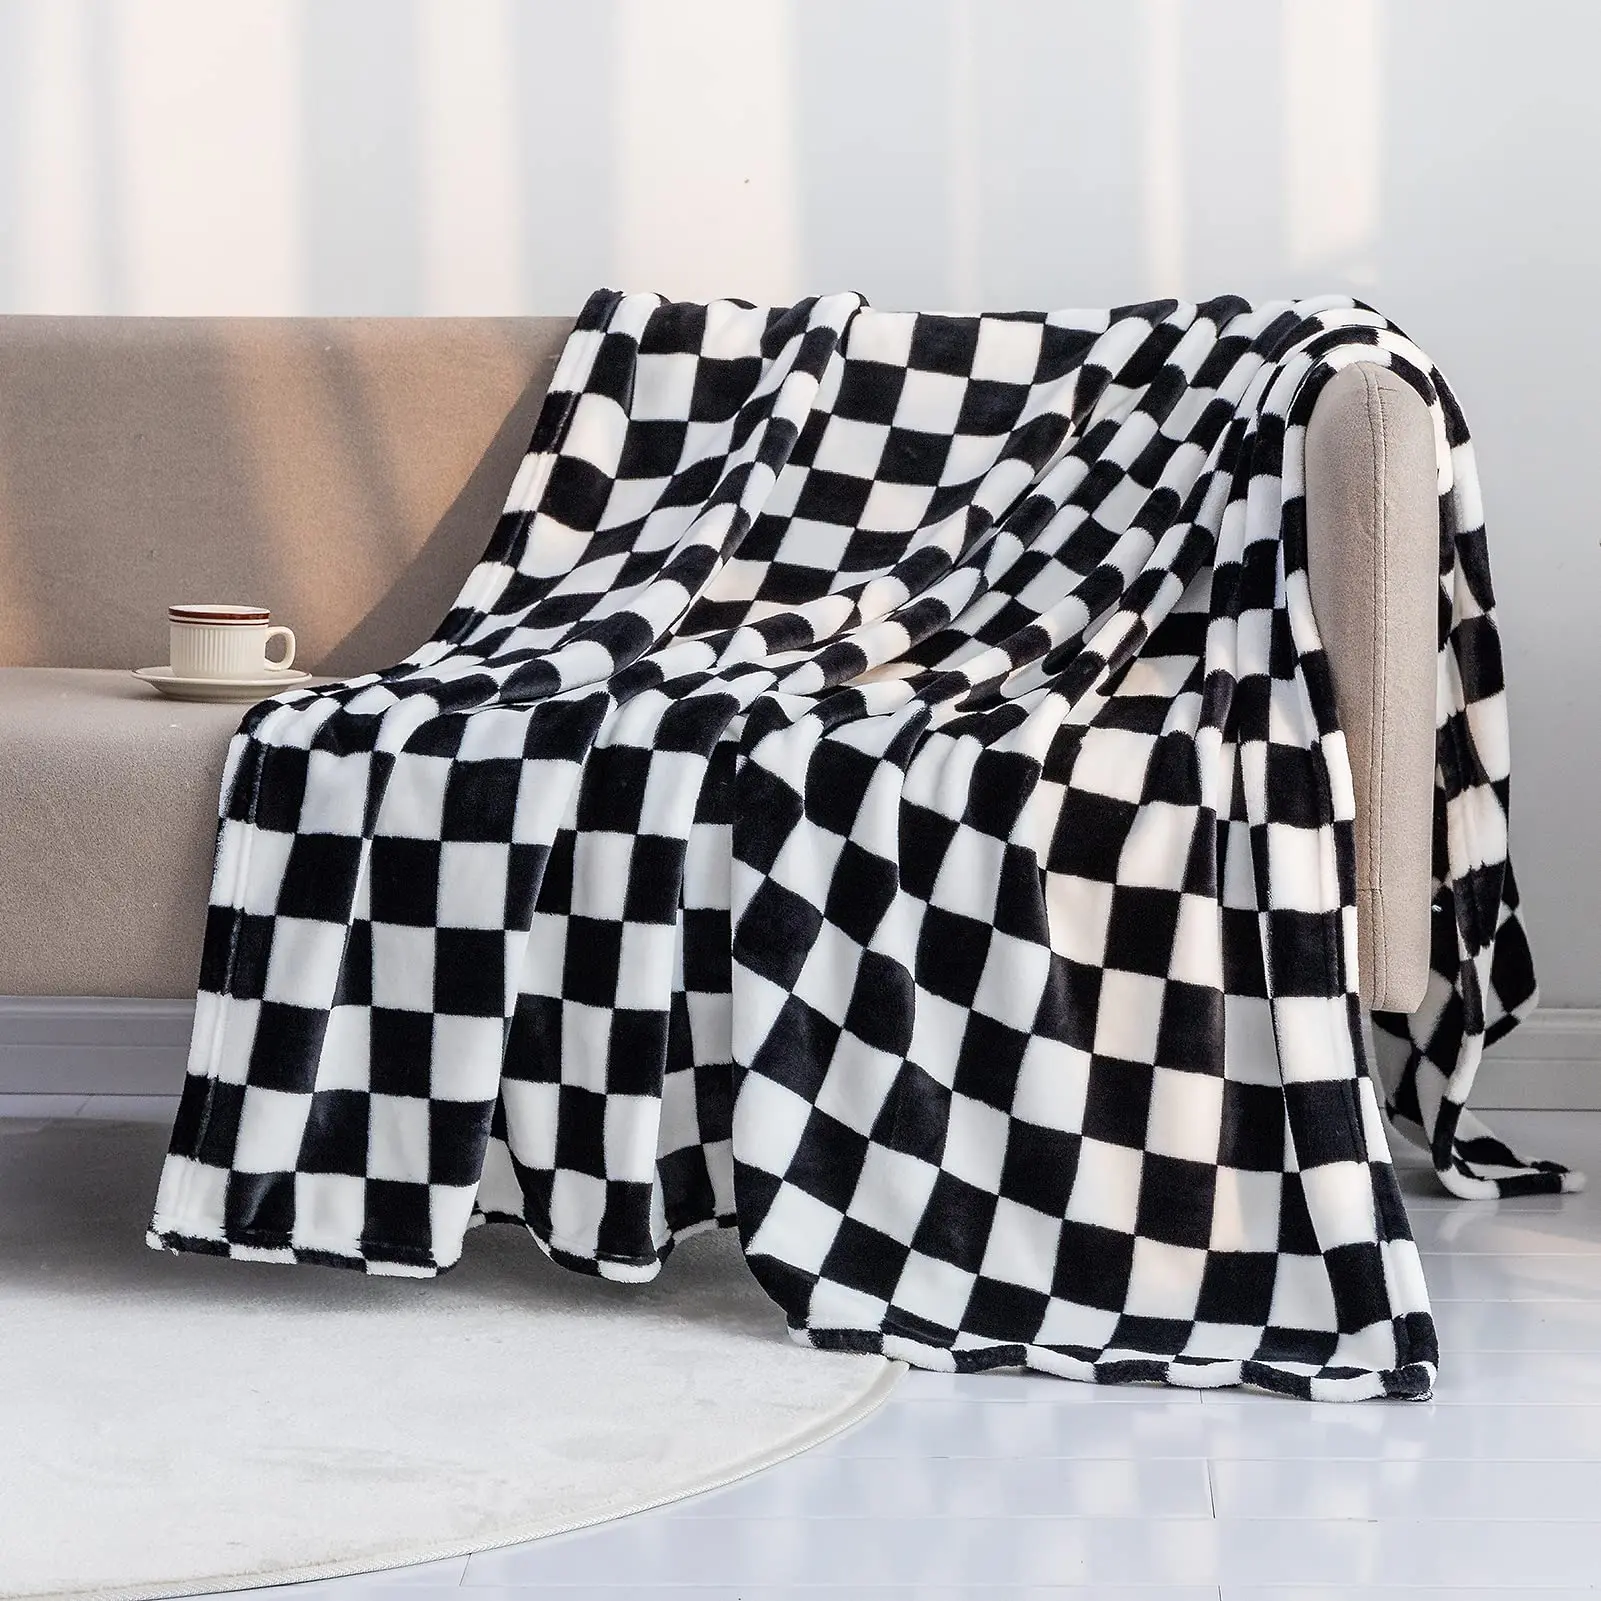 Черно-белое сетчатое одеяло, постельное белье с геометрическим рисунком в клетку, легкое теплое одеяло, пушистое мягкое для кровати, дивана, домашнего декора 0